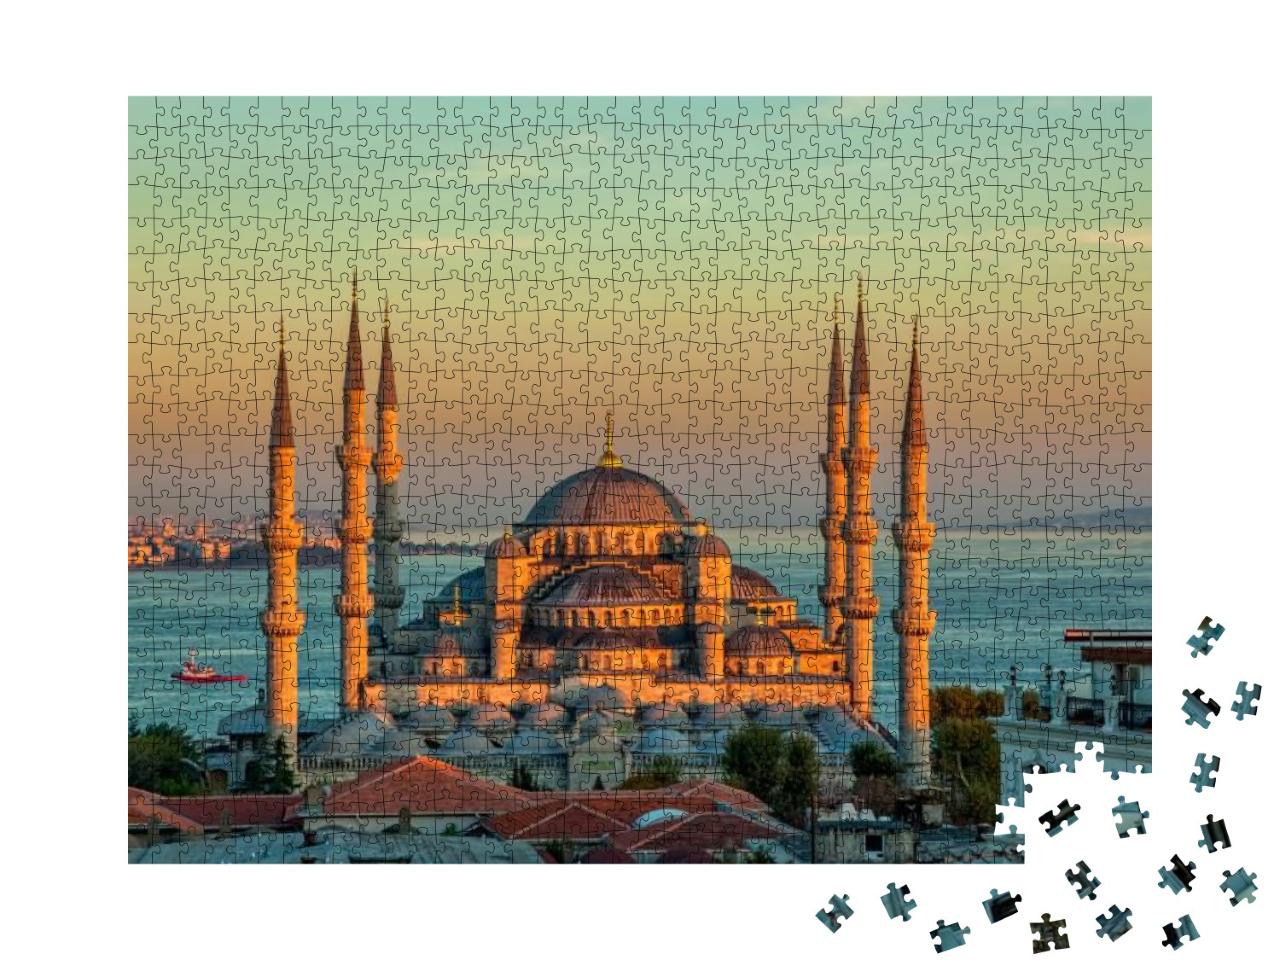 Puzzle 1000 Teile „Die Blaue Moschee bei Sonnenuntergang, Istanbul“